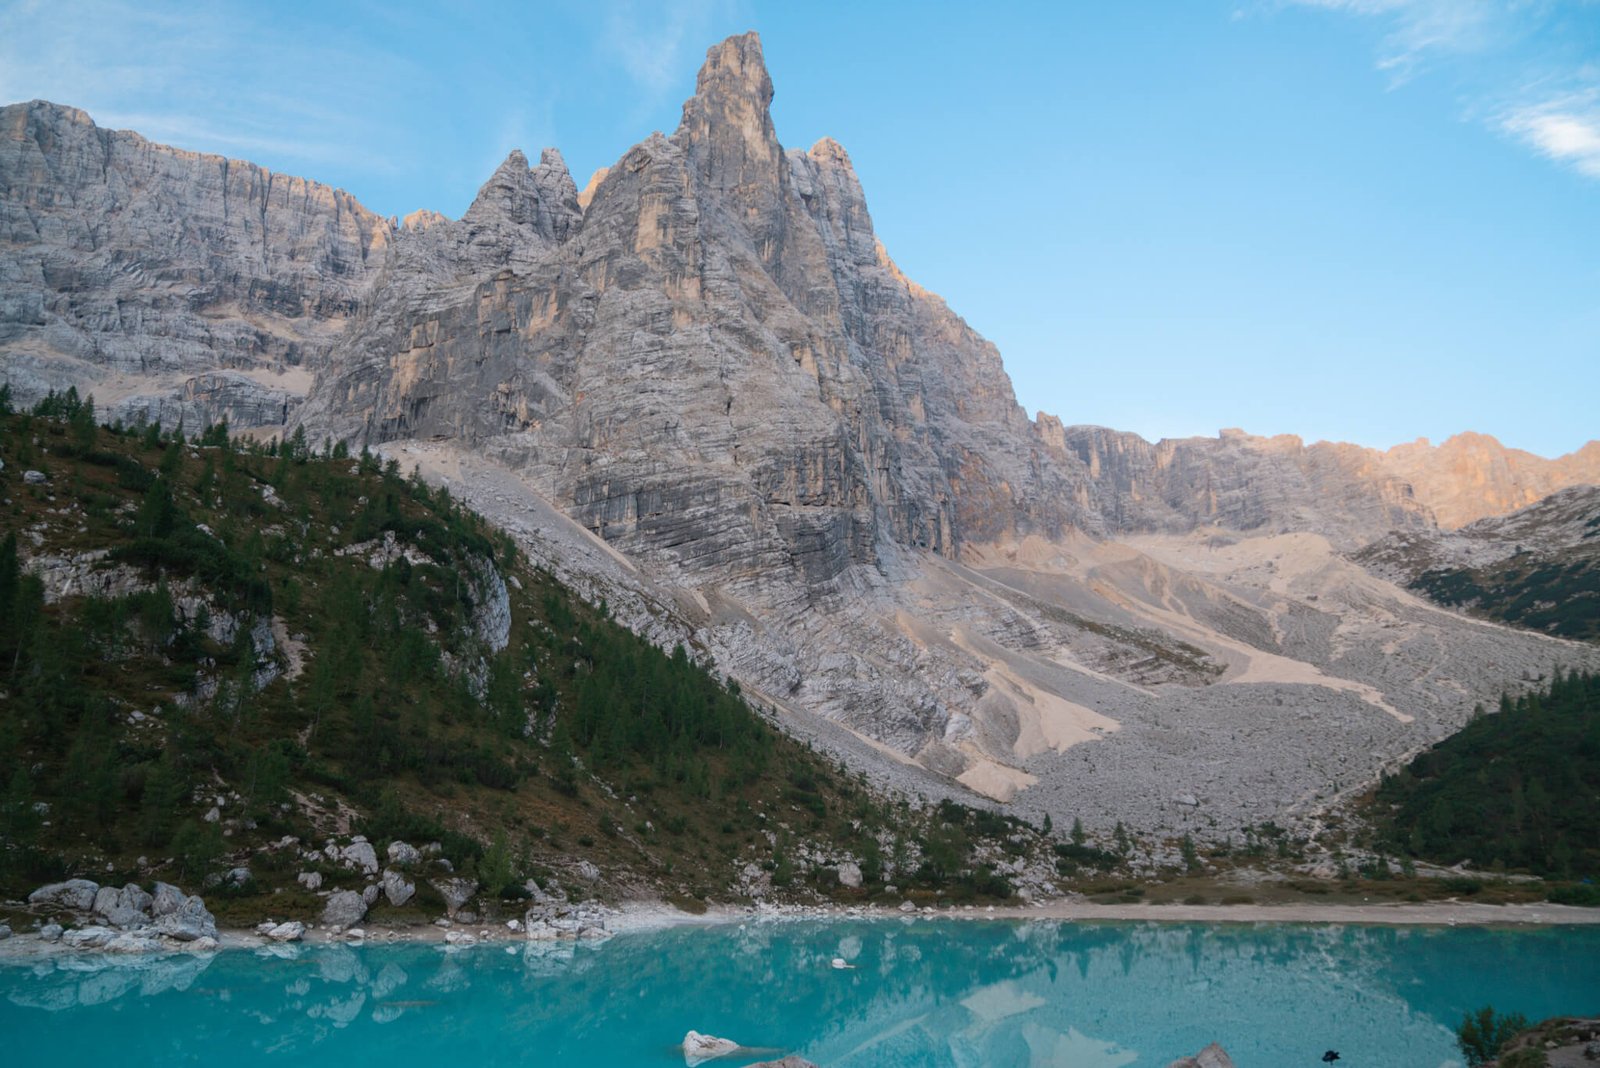 Lago di Sorapis, the Dolomites in Italy